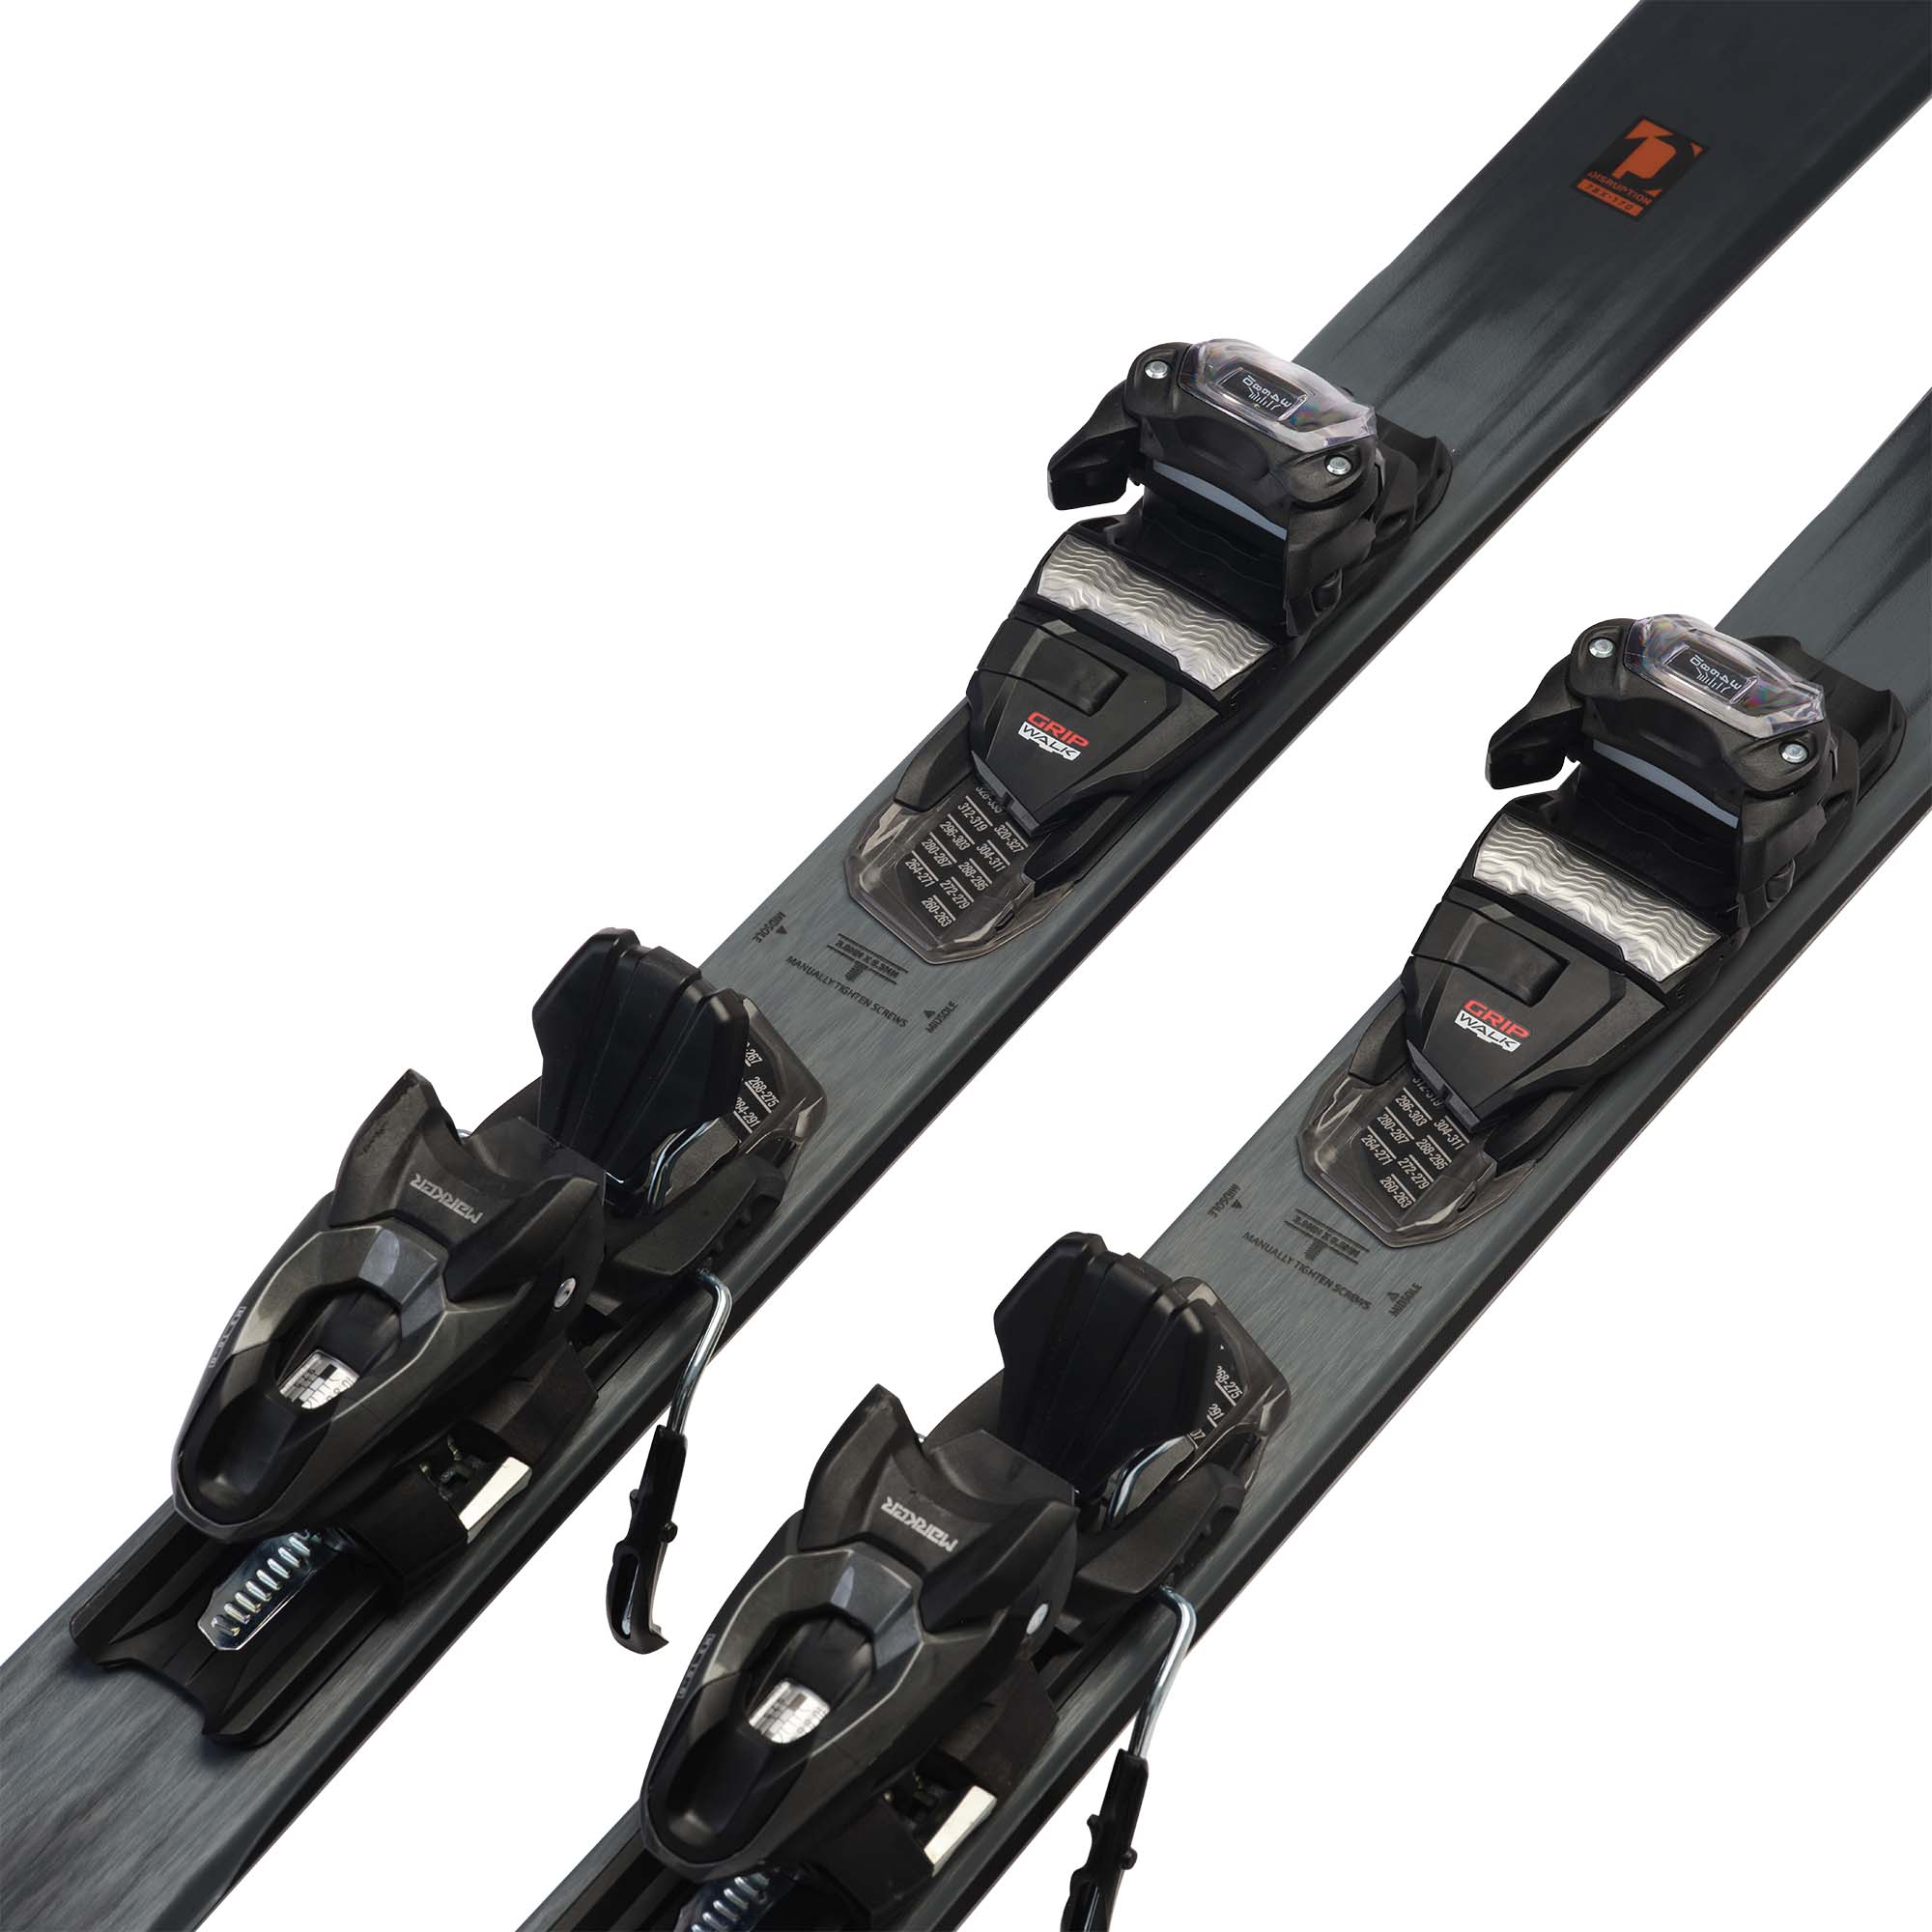 K2 Disruption 76X + M3 10 Compact Quikclik Skis